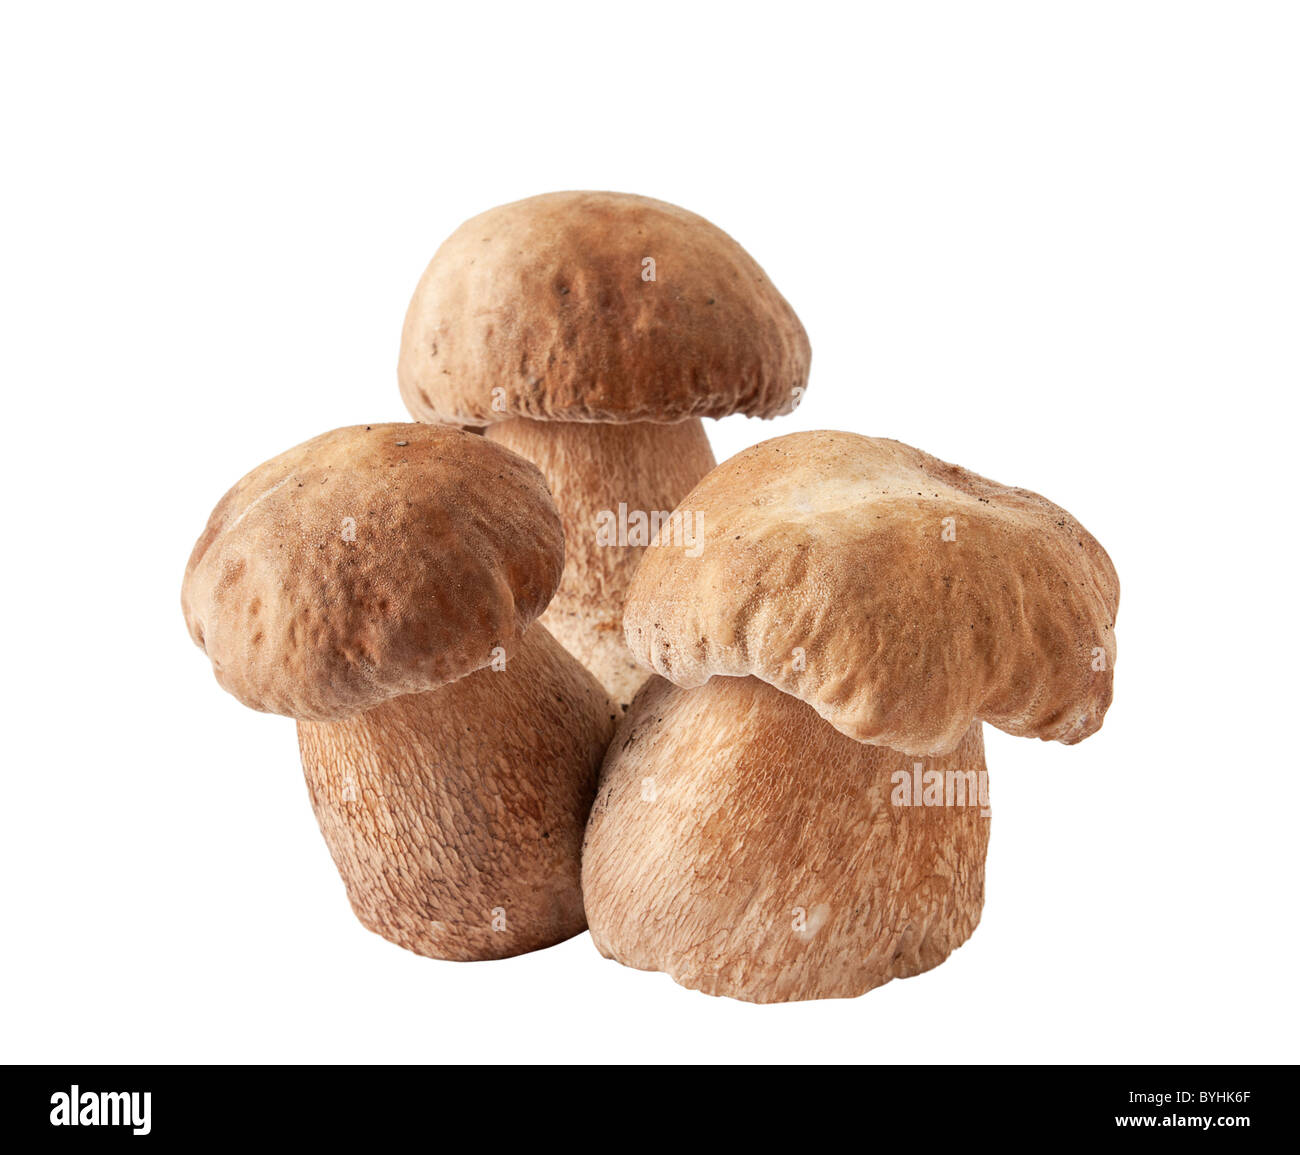 white mushroom Stock Photo